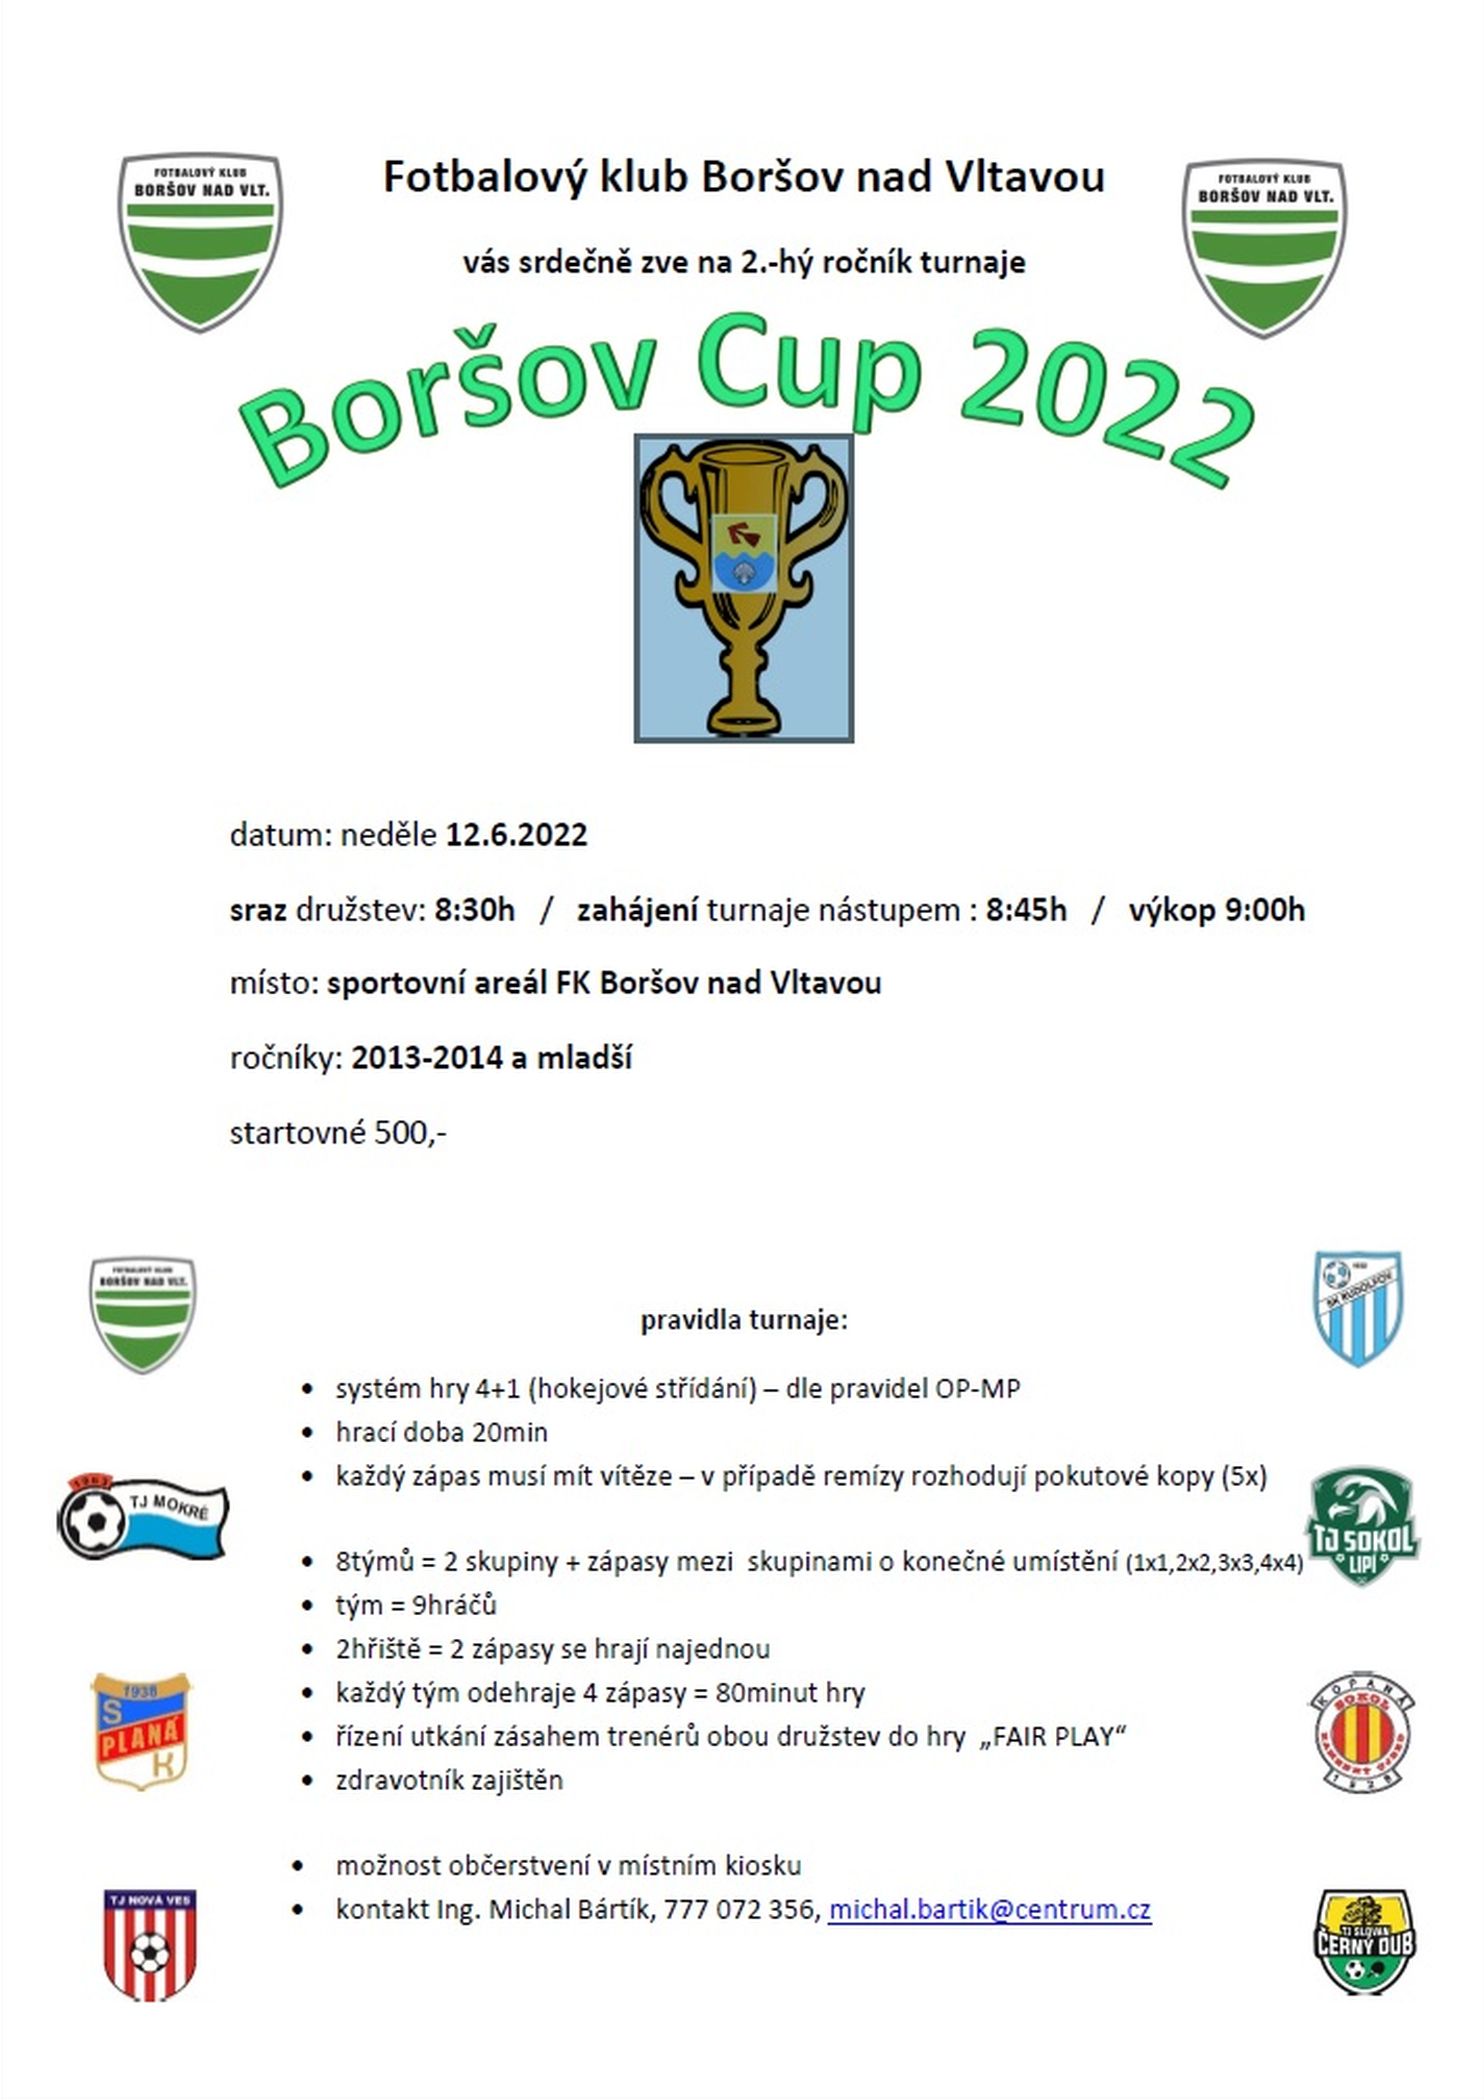 Boršov cup 2022